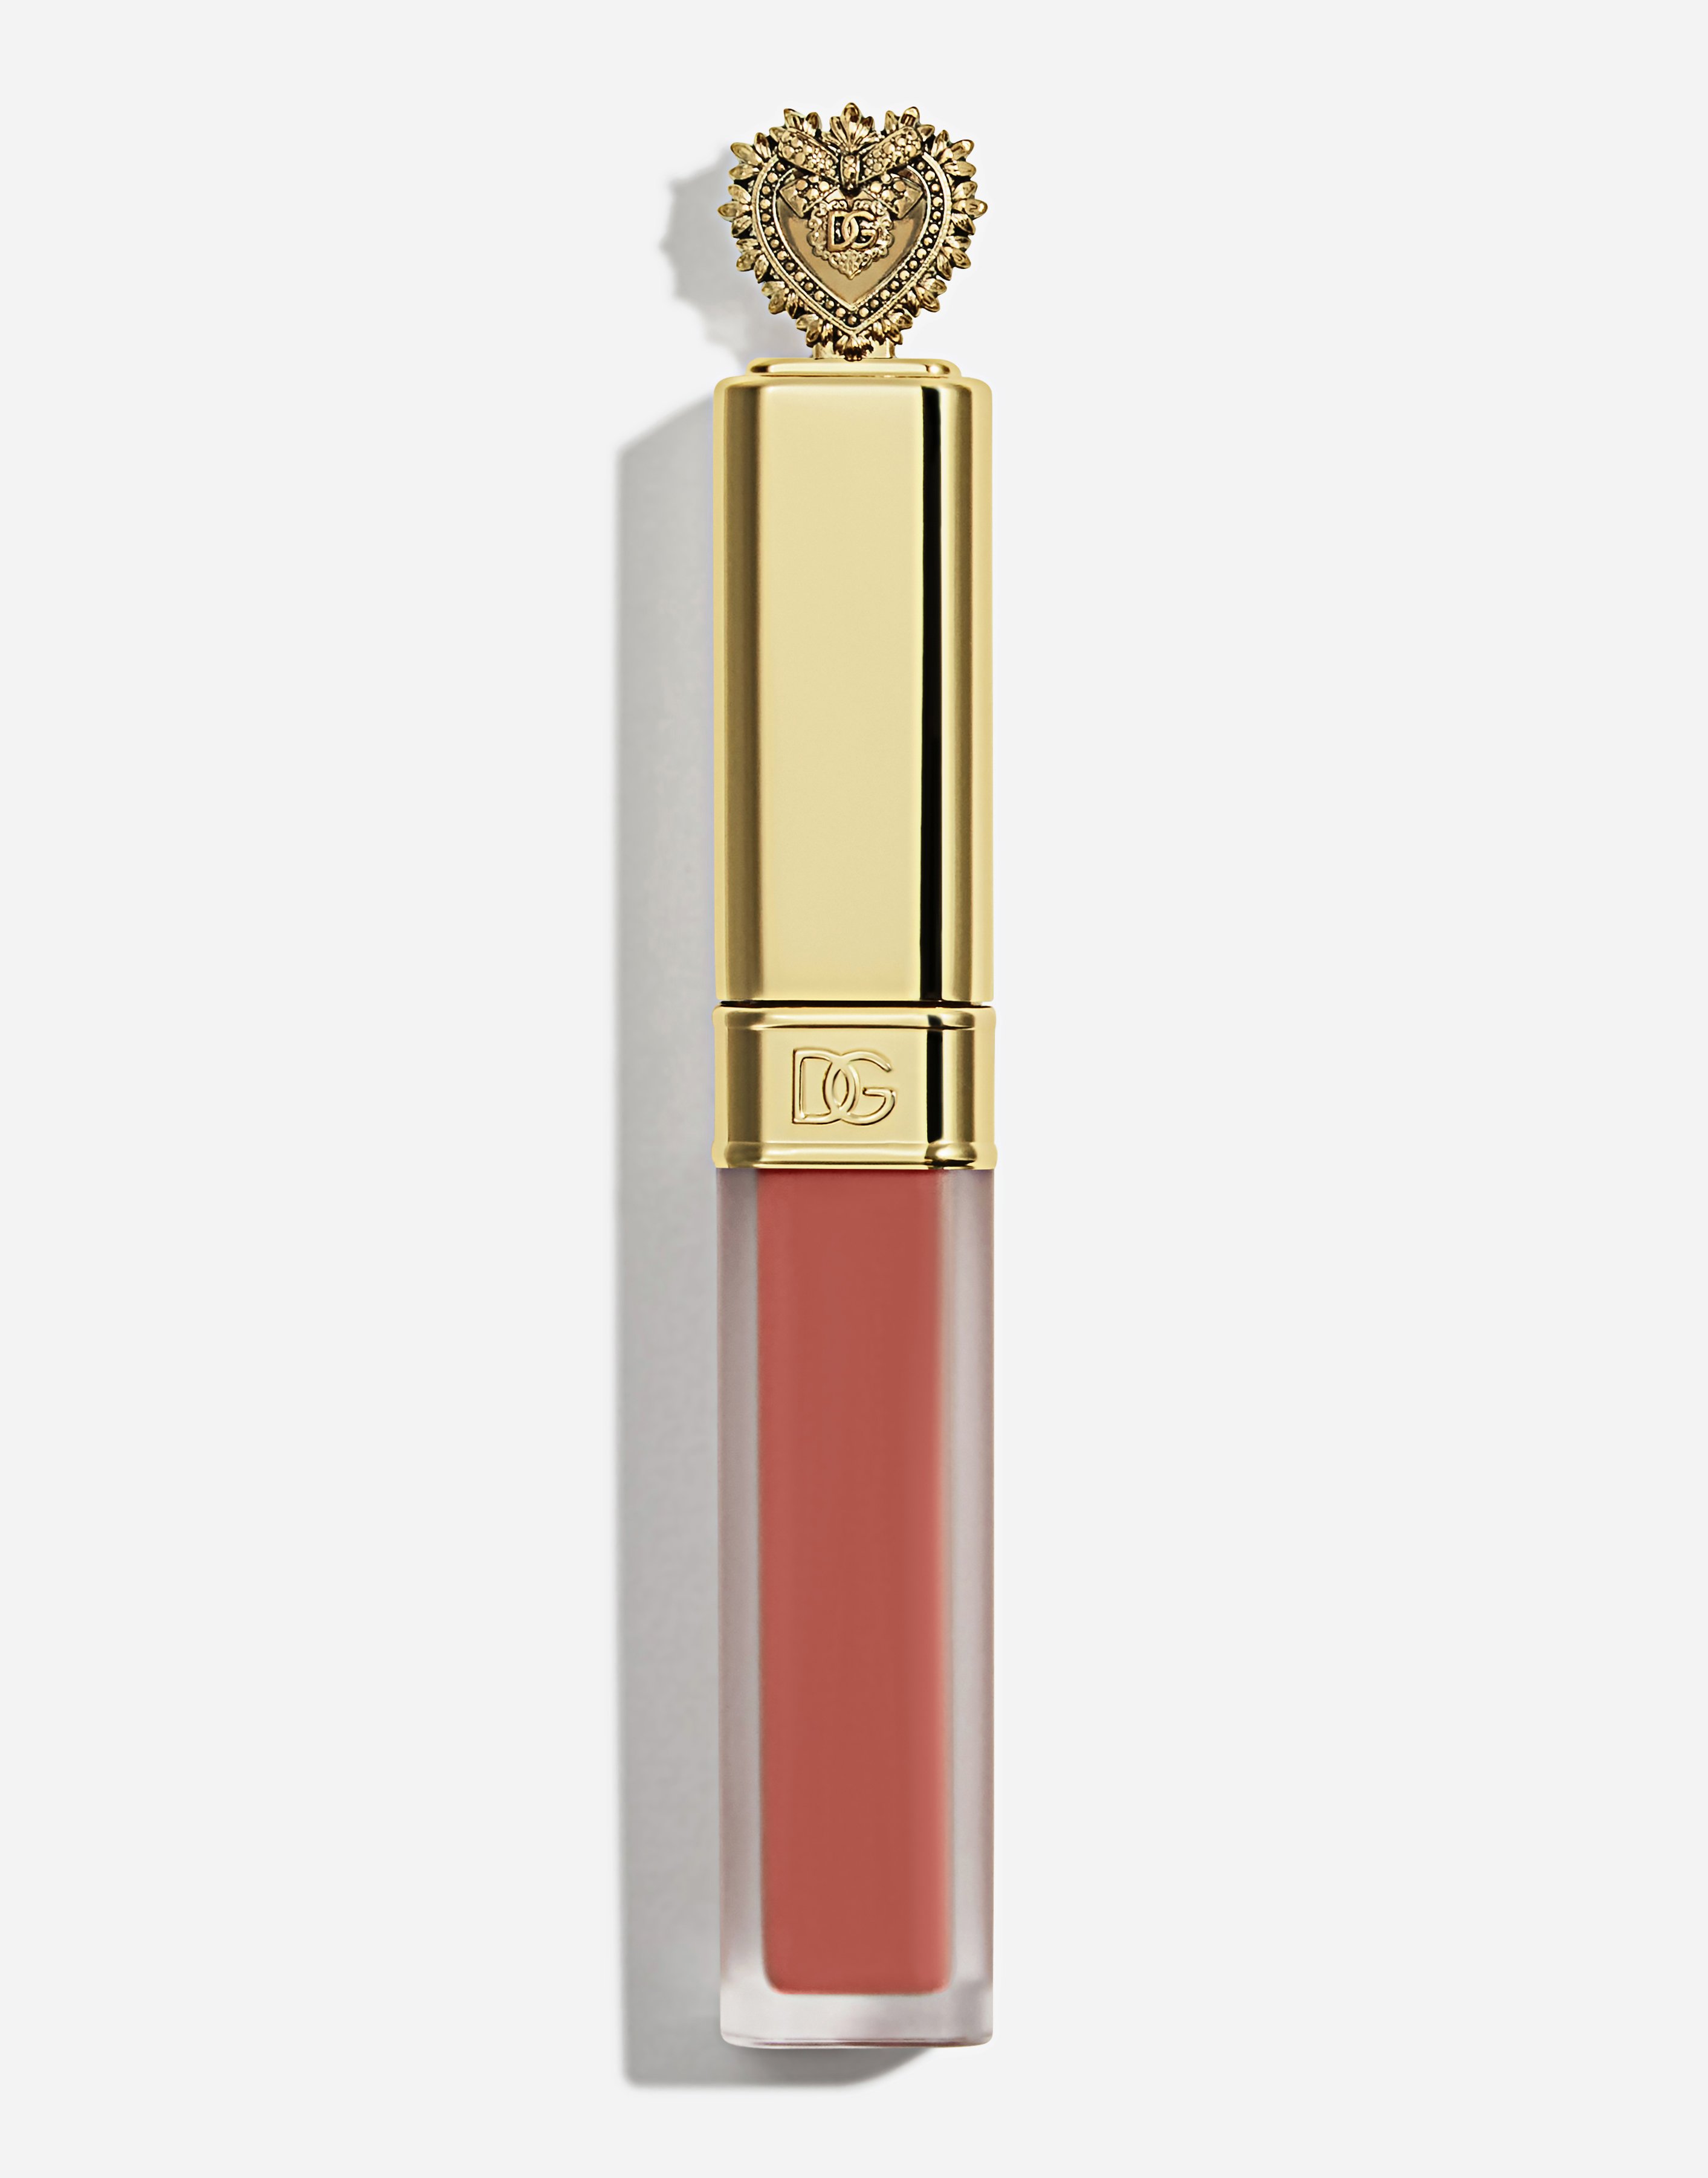 Dolce & Gabbana Devotion Liquid Lipstick In Mousse In 105 Rispetto